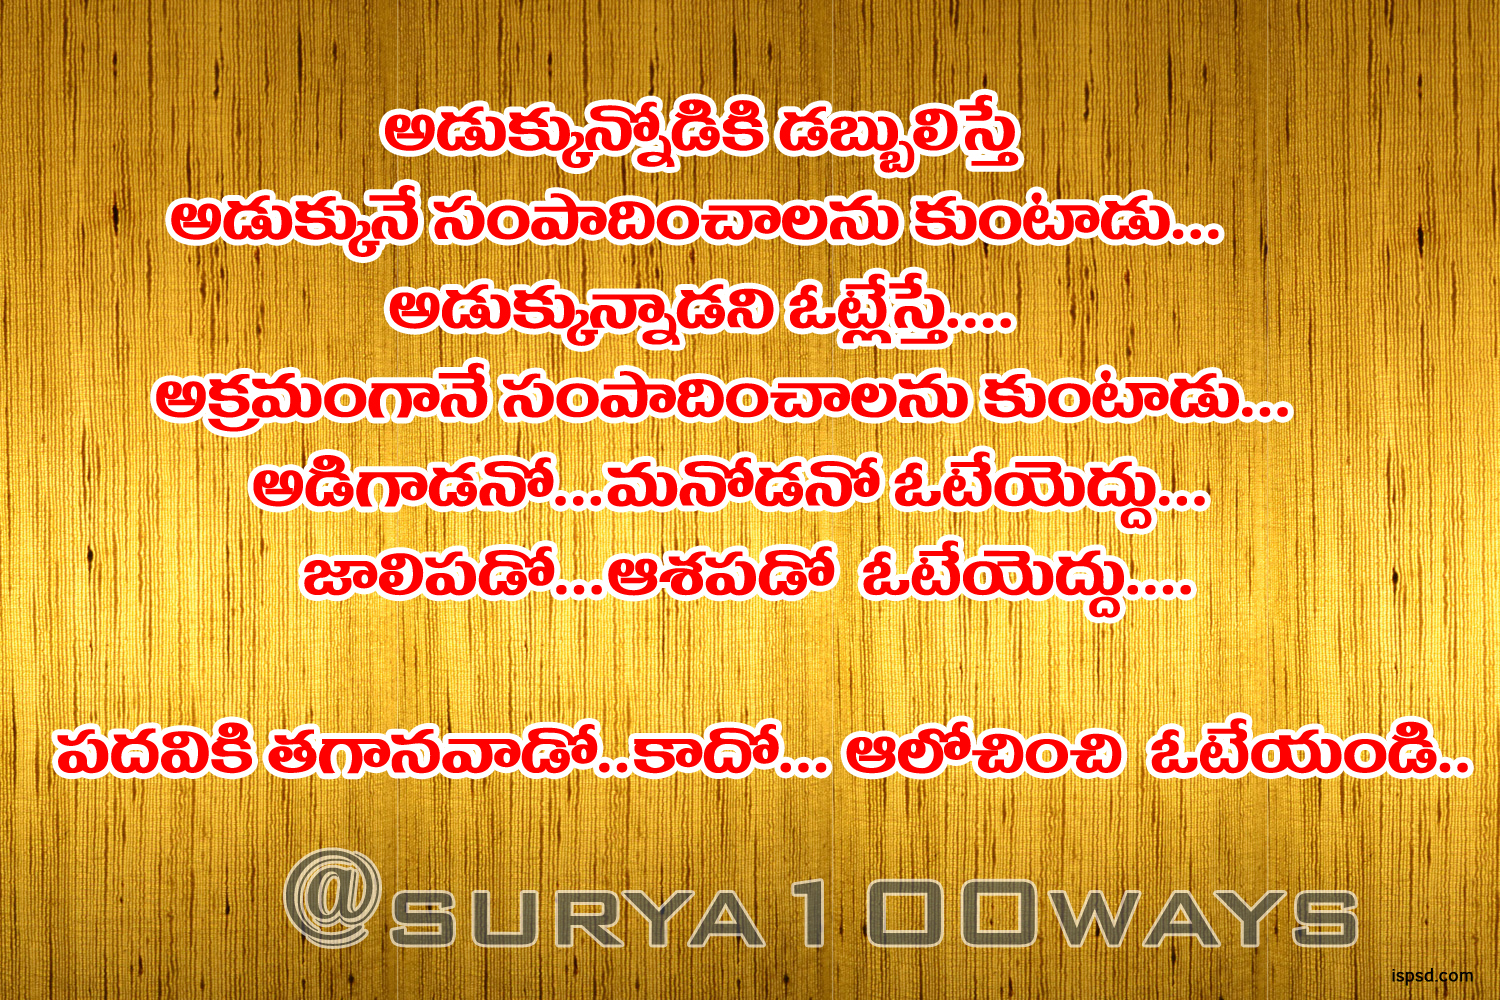  Telugu  Quotes  On Friendship  QuotesGram